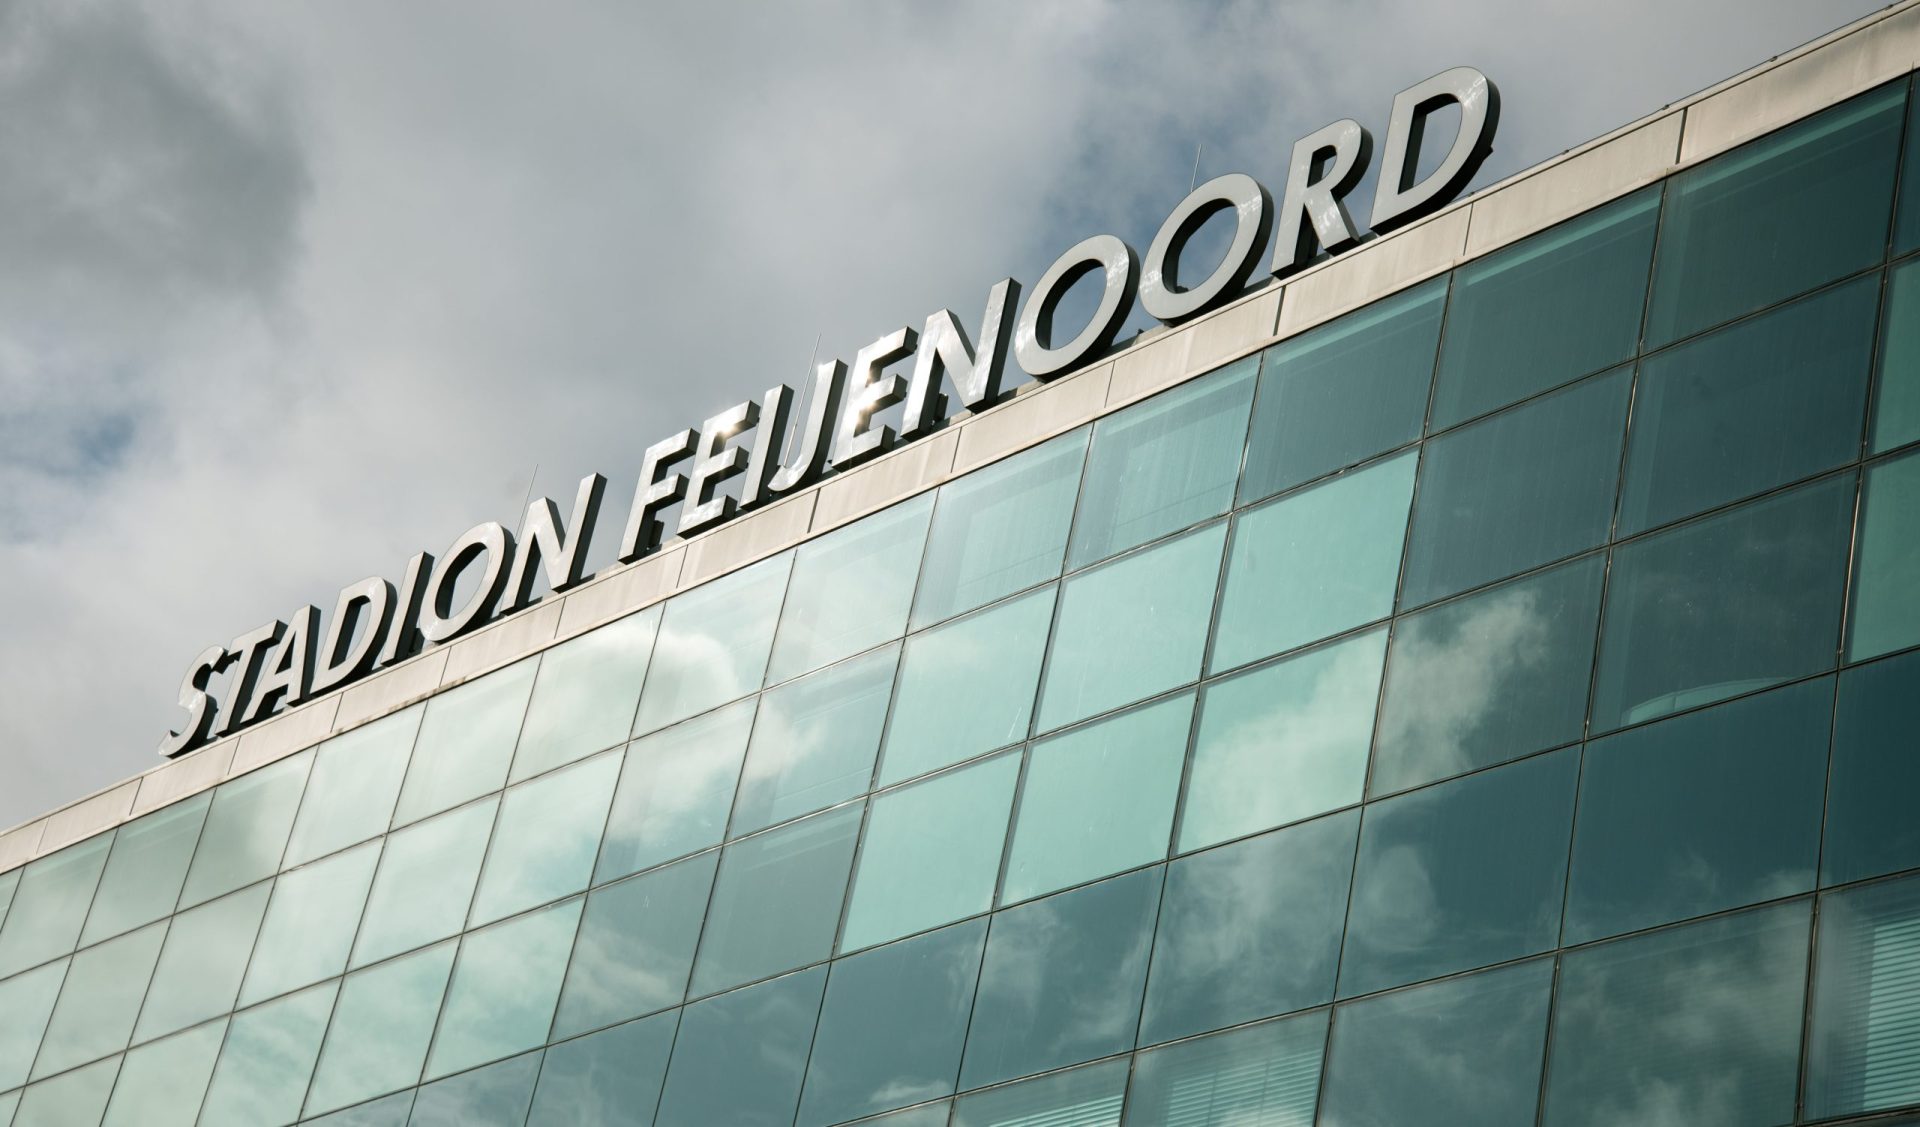 BVB Landscaping Rotterdam Feyenoord grasmat voetbalveld sportveld golfbaan aanleg onderhoud dressgrond